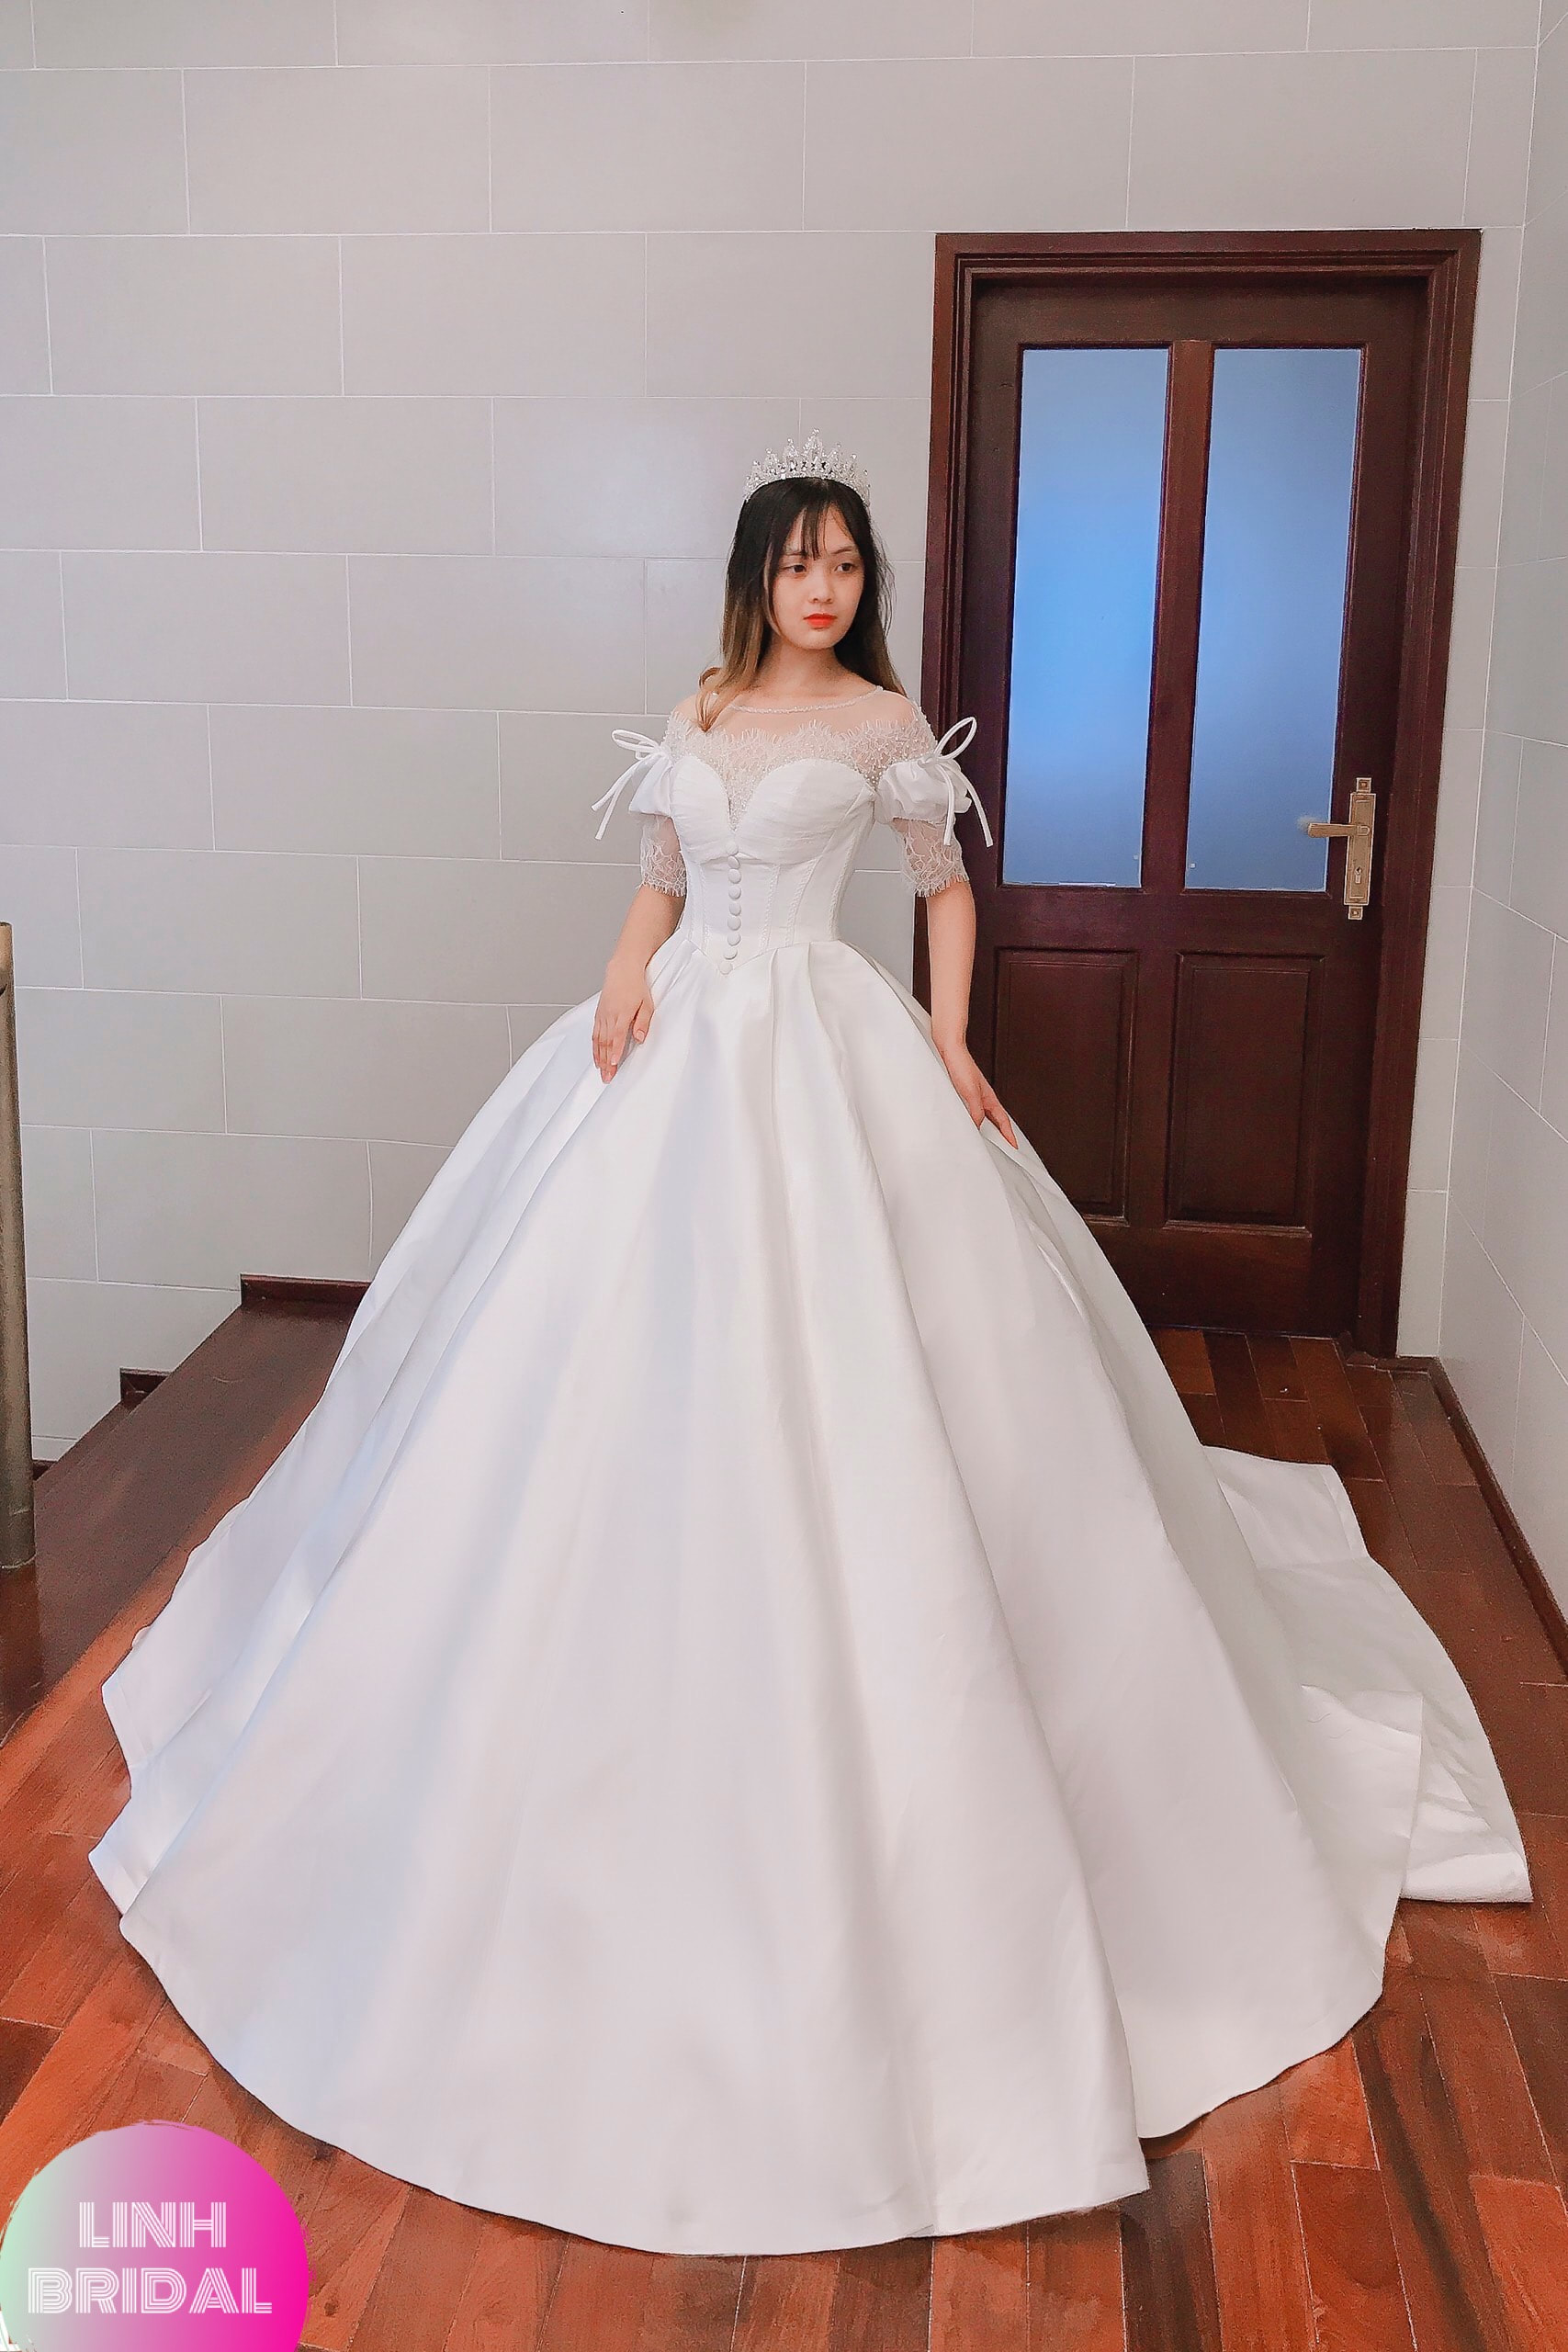 Beautiful royal vintage inspired white satin wedding dress